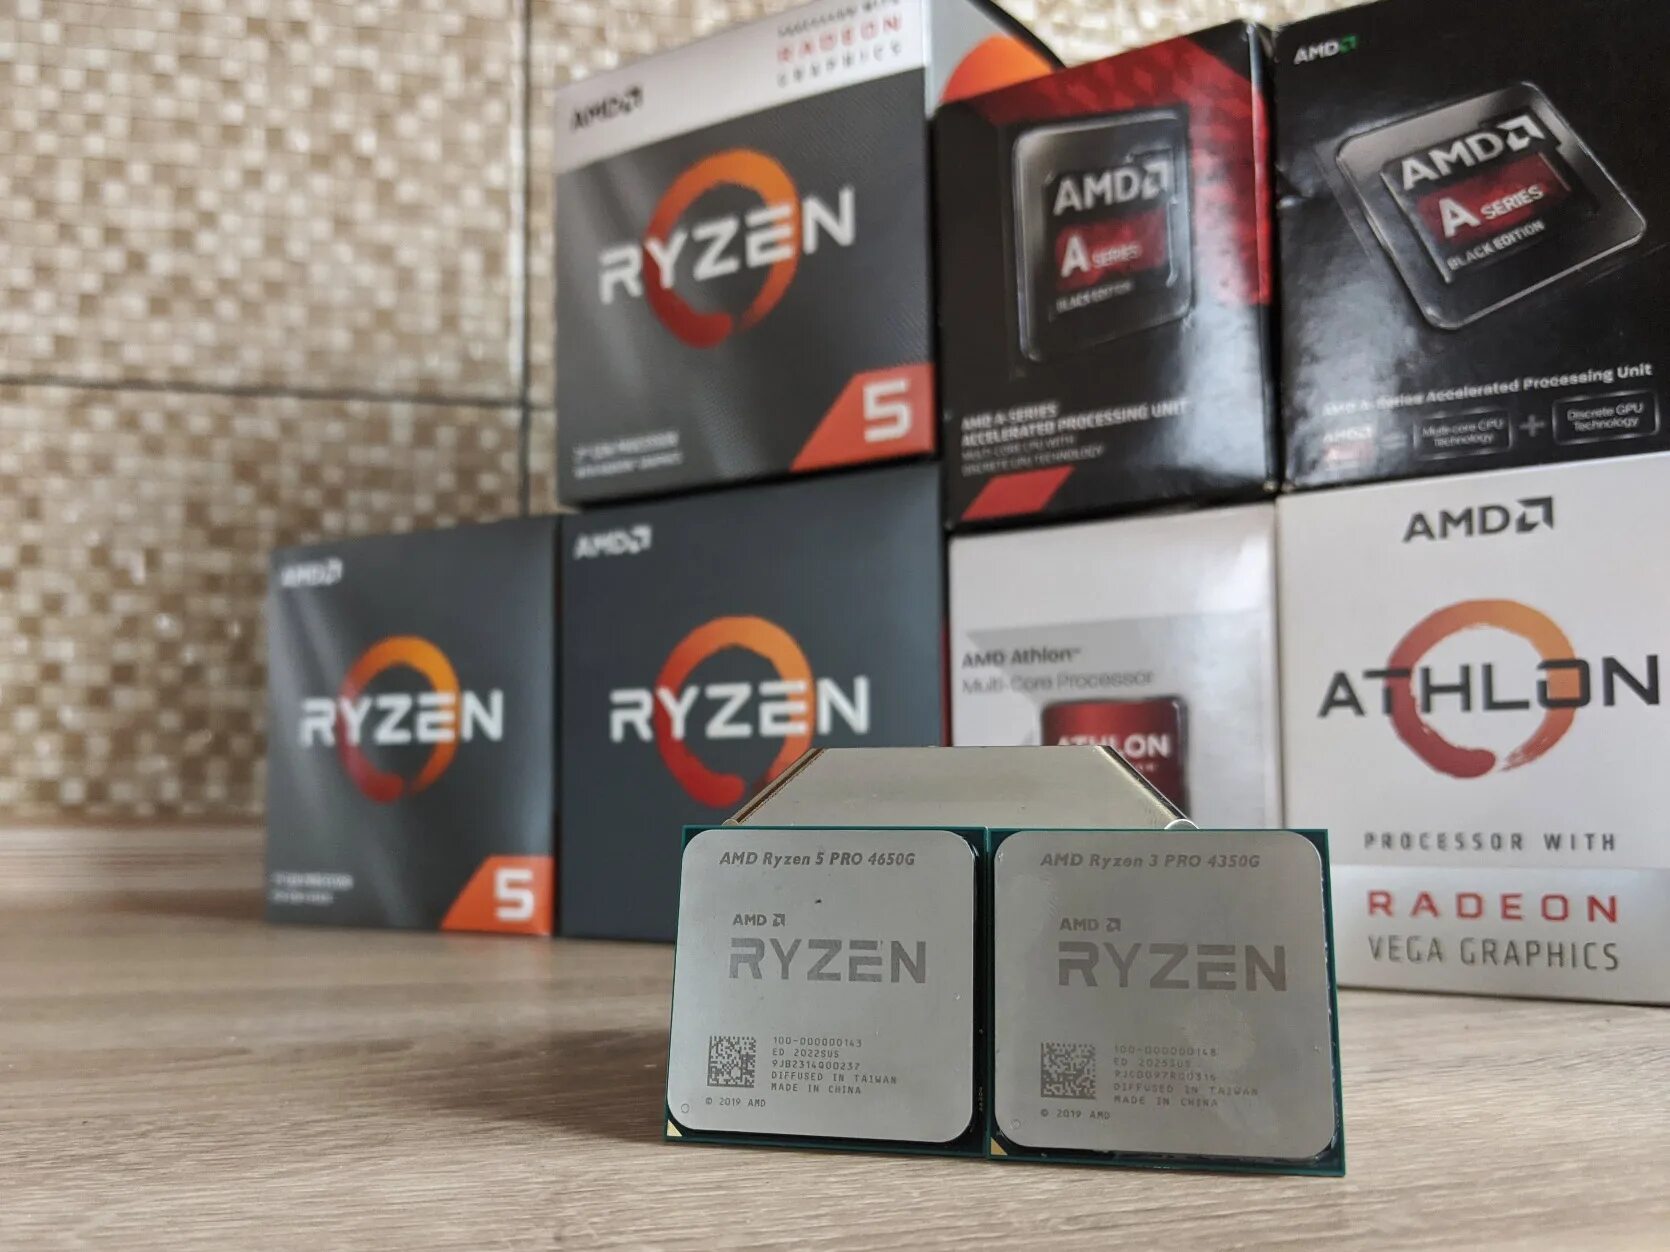 Ryzen 5 radeon graphics. Процессор AMD Ryzen 3 Pro 4350g. Процессор AMD Ryzen 7 5700g. AMD Ryzen 5 Pro 4650g. Процессор AMD Ryzen 7 5700g упаковка.